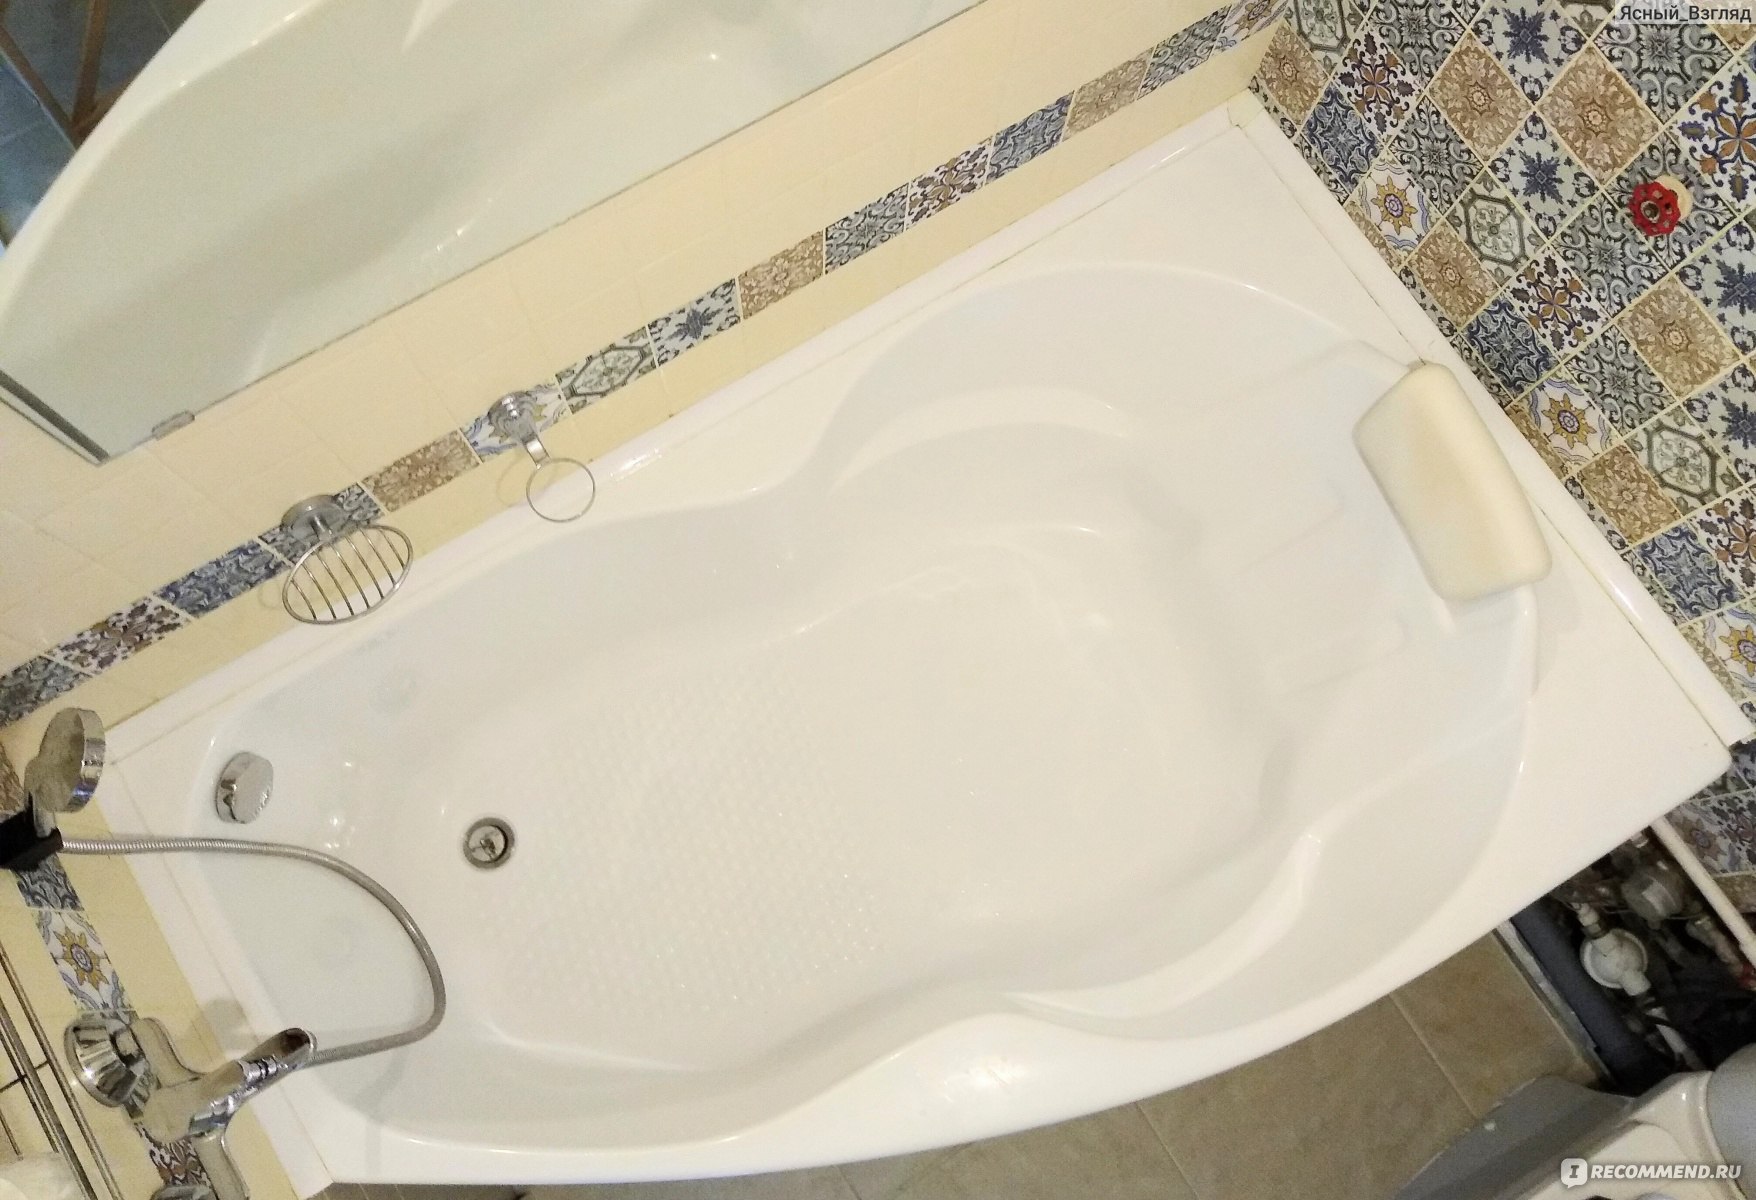 Как прочистить засор в ванной и раковине от волос и жира? Советы +Видео